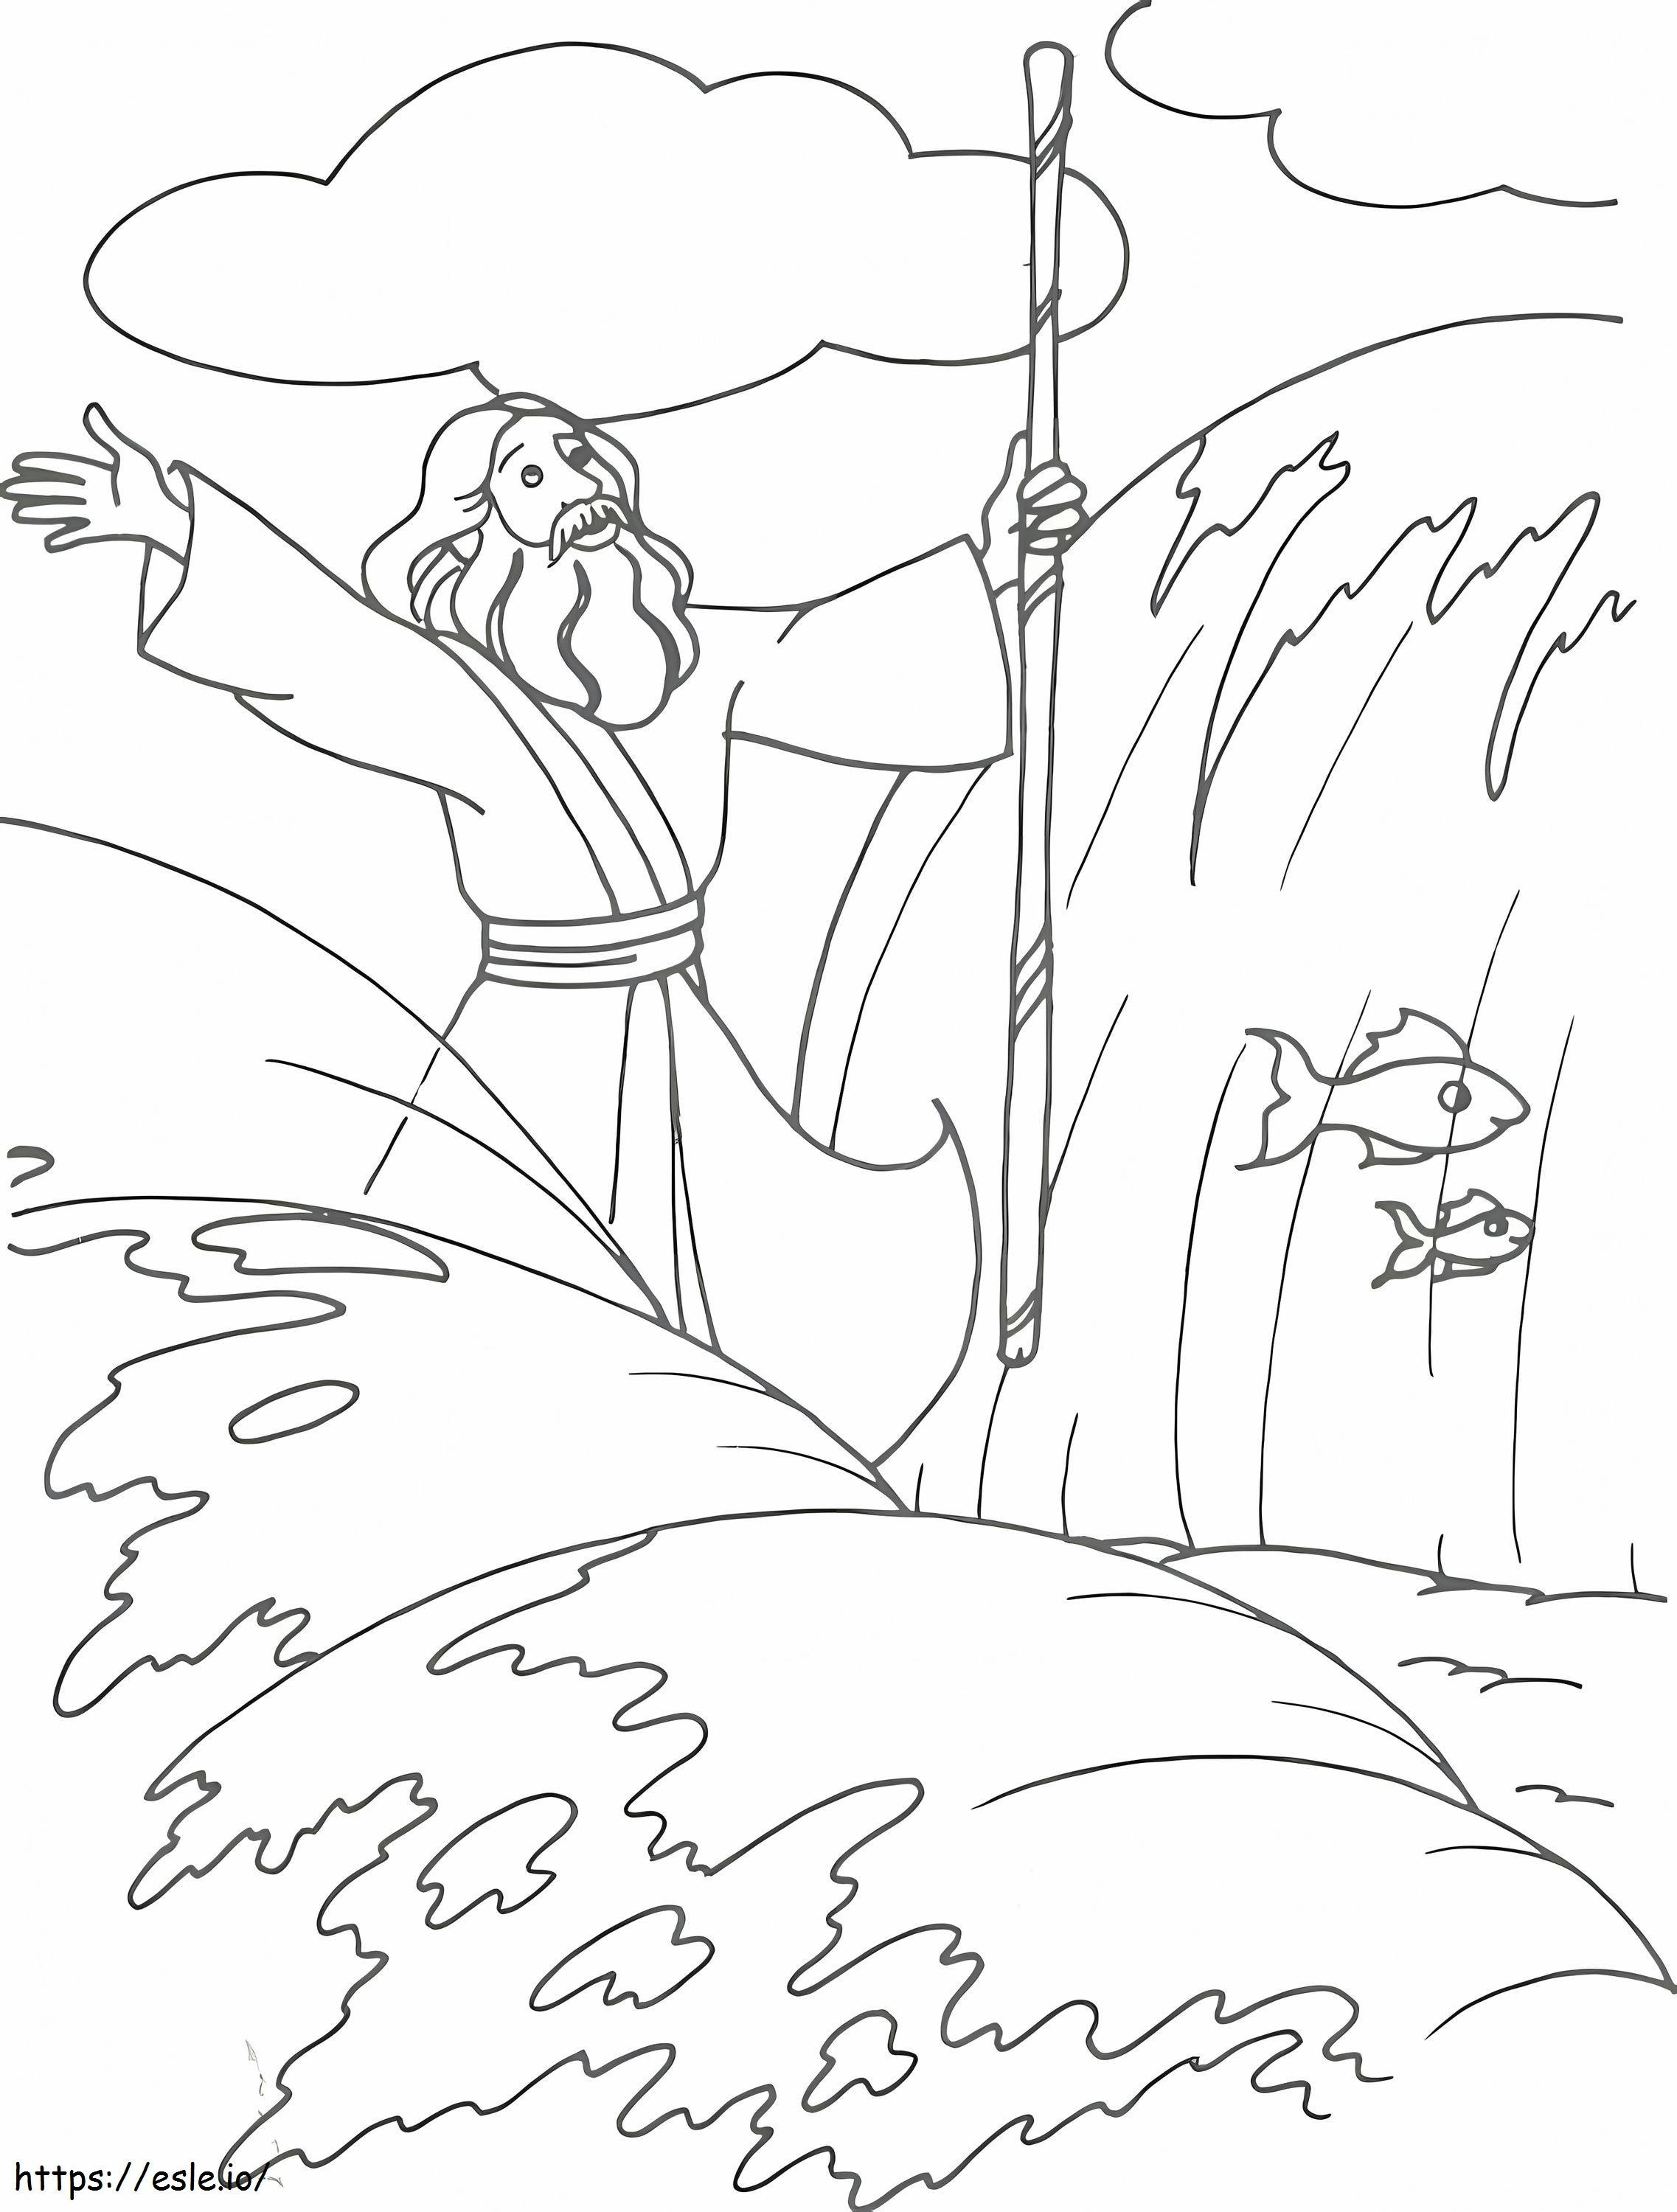 Moisés está atravessando o Mar Vermelho para colorir